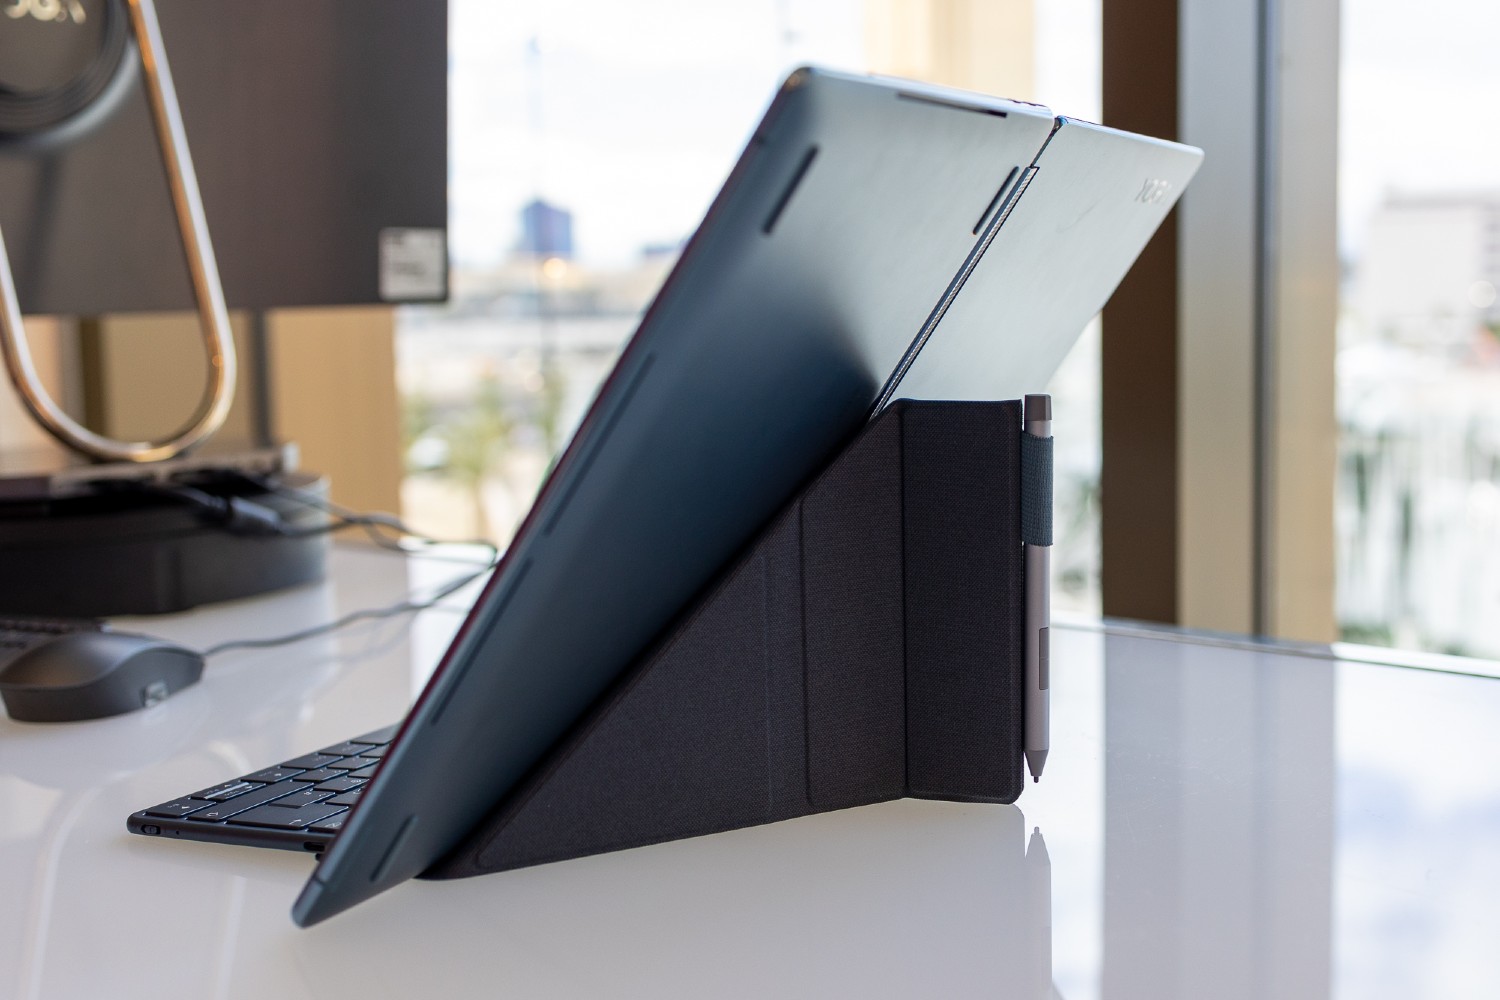 O Lenovo Yoga Book 9i no suporte de origami.